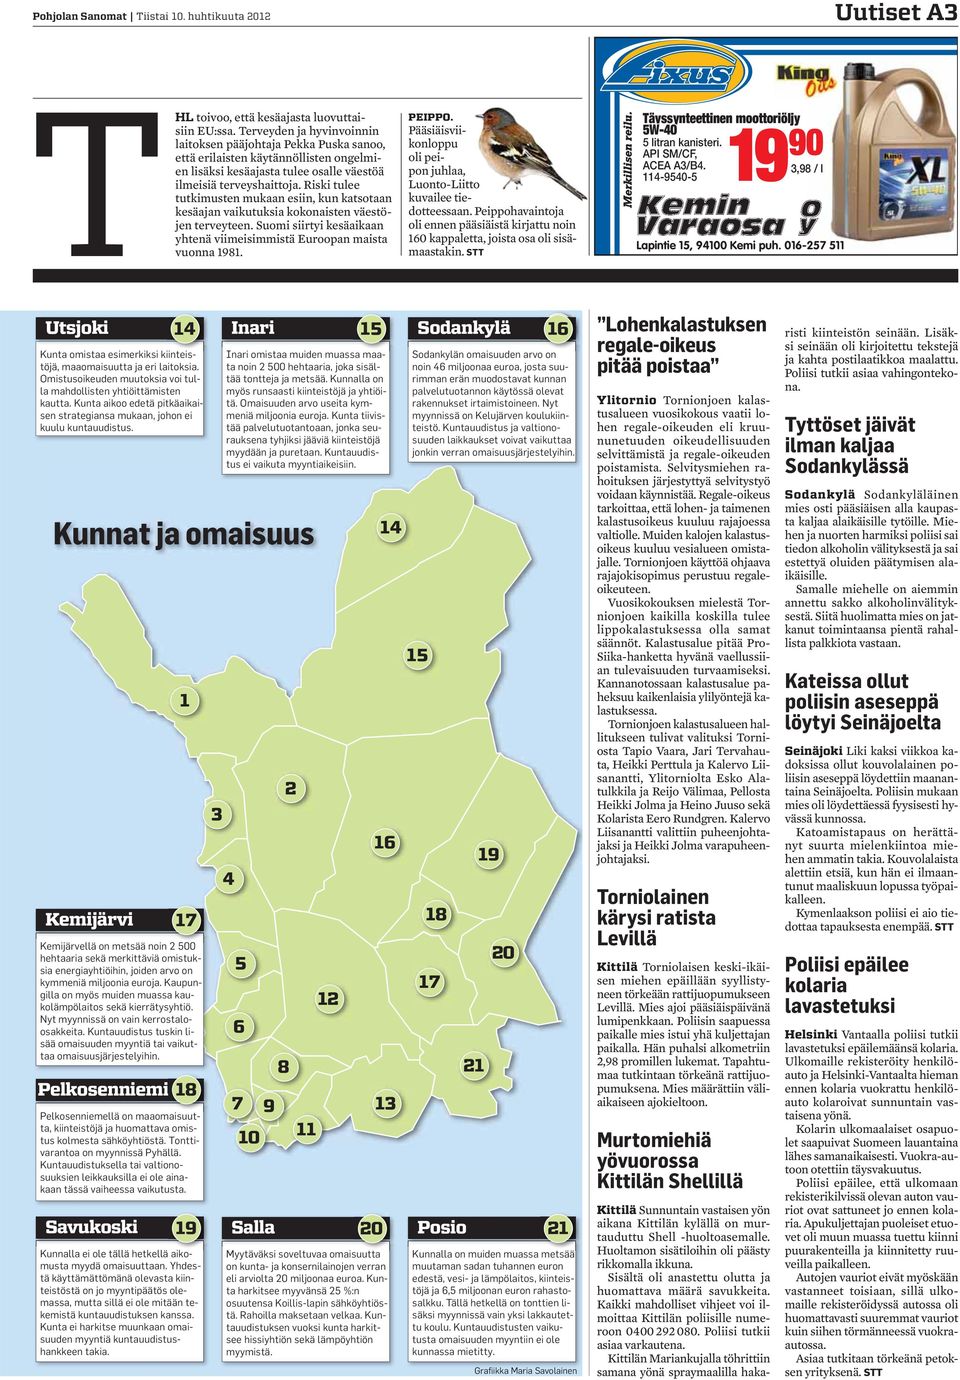 Riski tulee tutkimusten mukaan esiin, kun katsotaan kesäajan vaikutuksia kokonaisten väestöjen terveyteen. Suomi siirtyi kesäaikaan yhtenä viimeisimmistä Euroopan maista vuonna 98. PEIPPO.